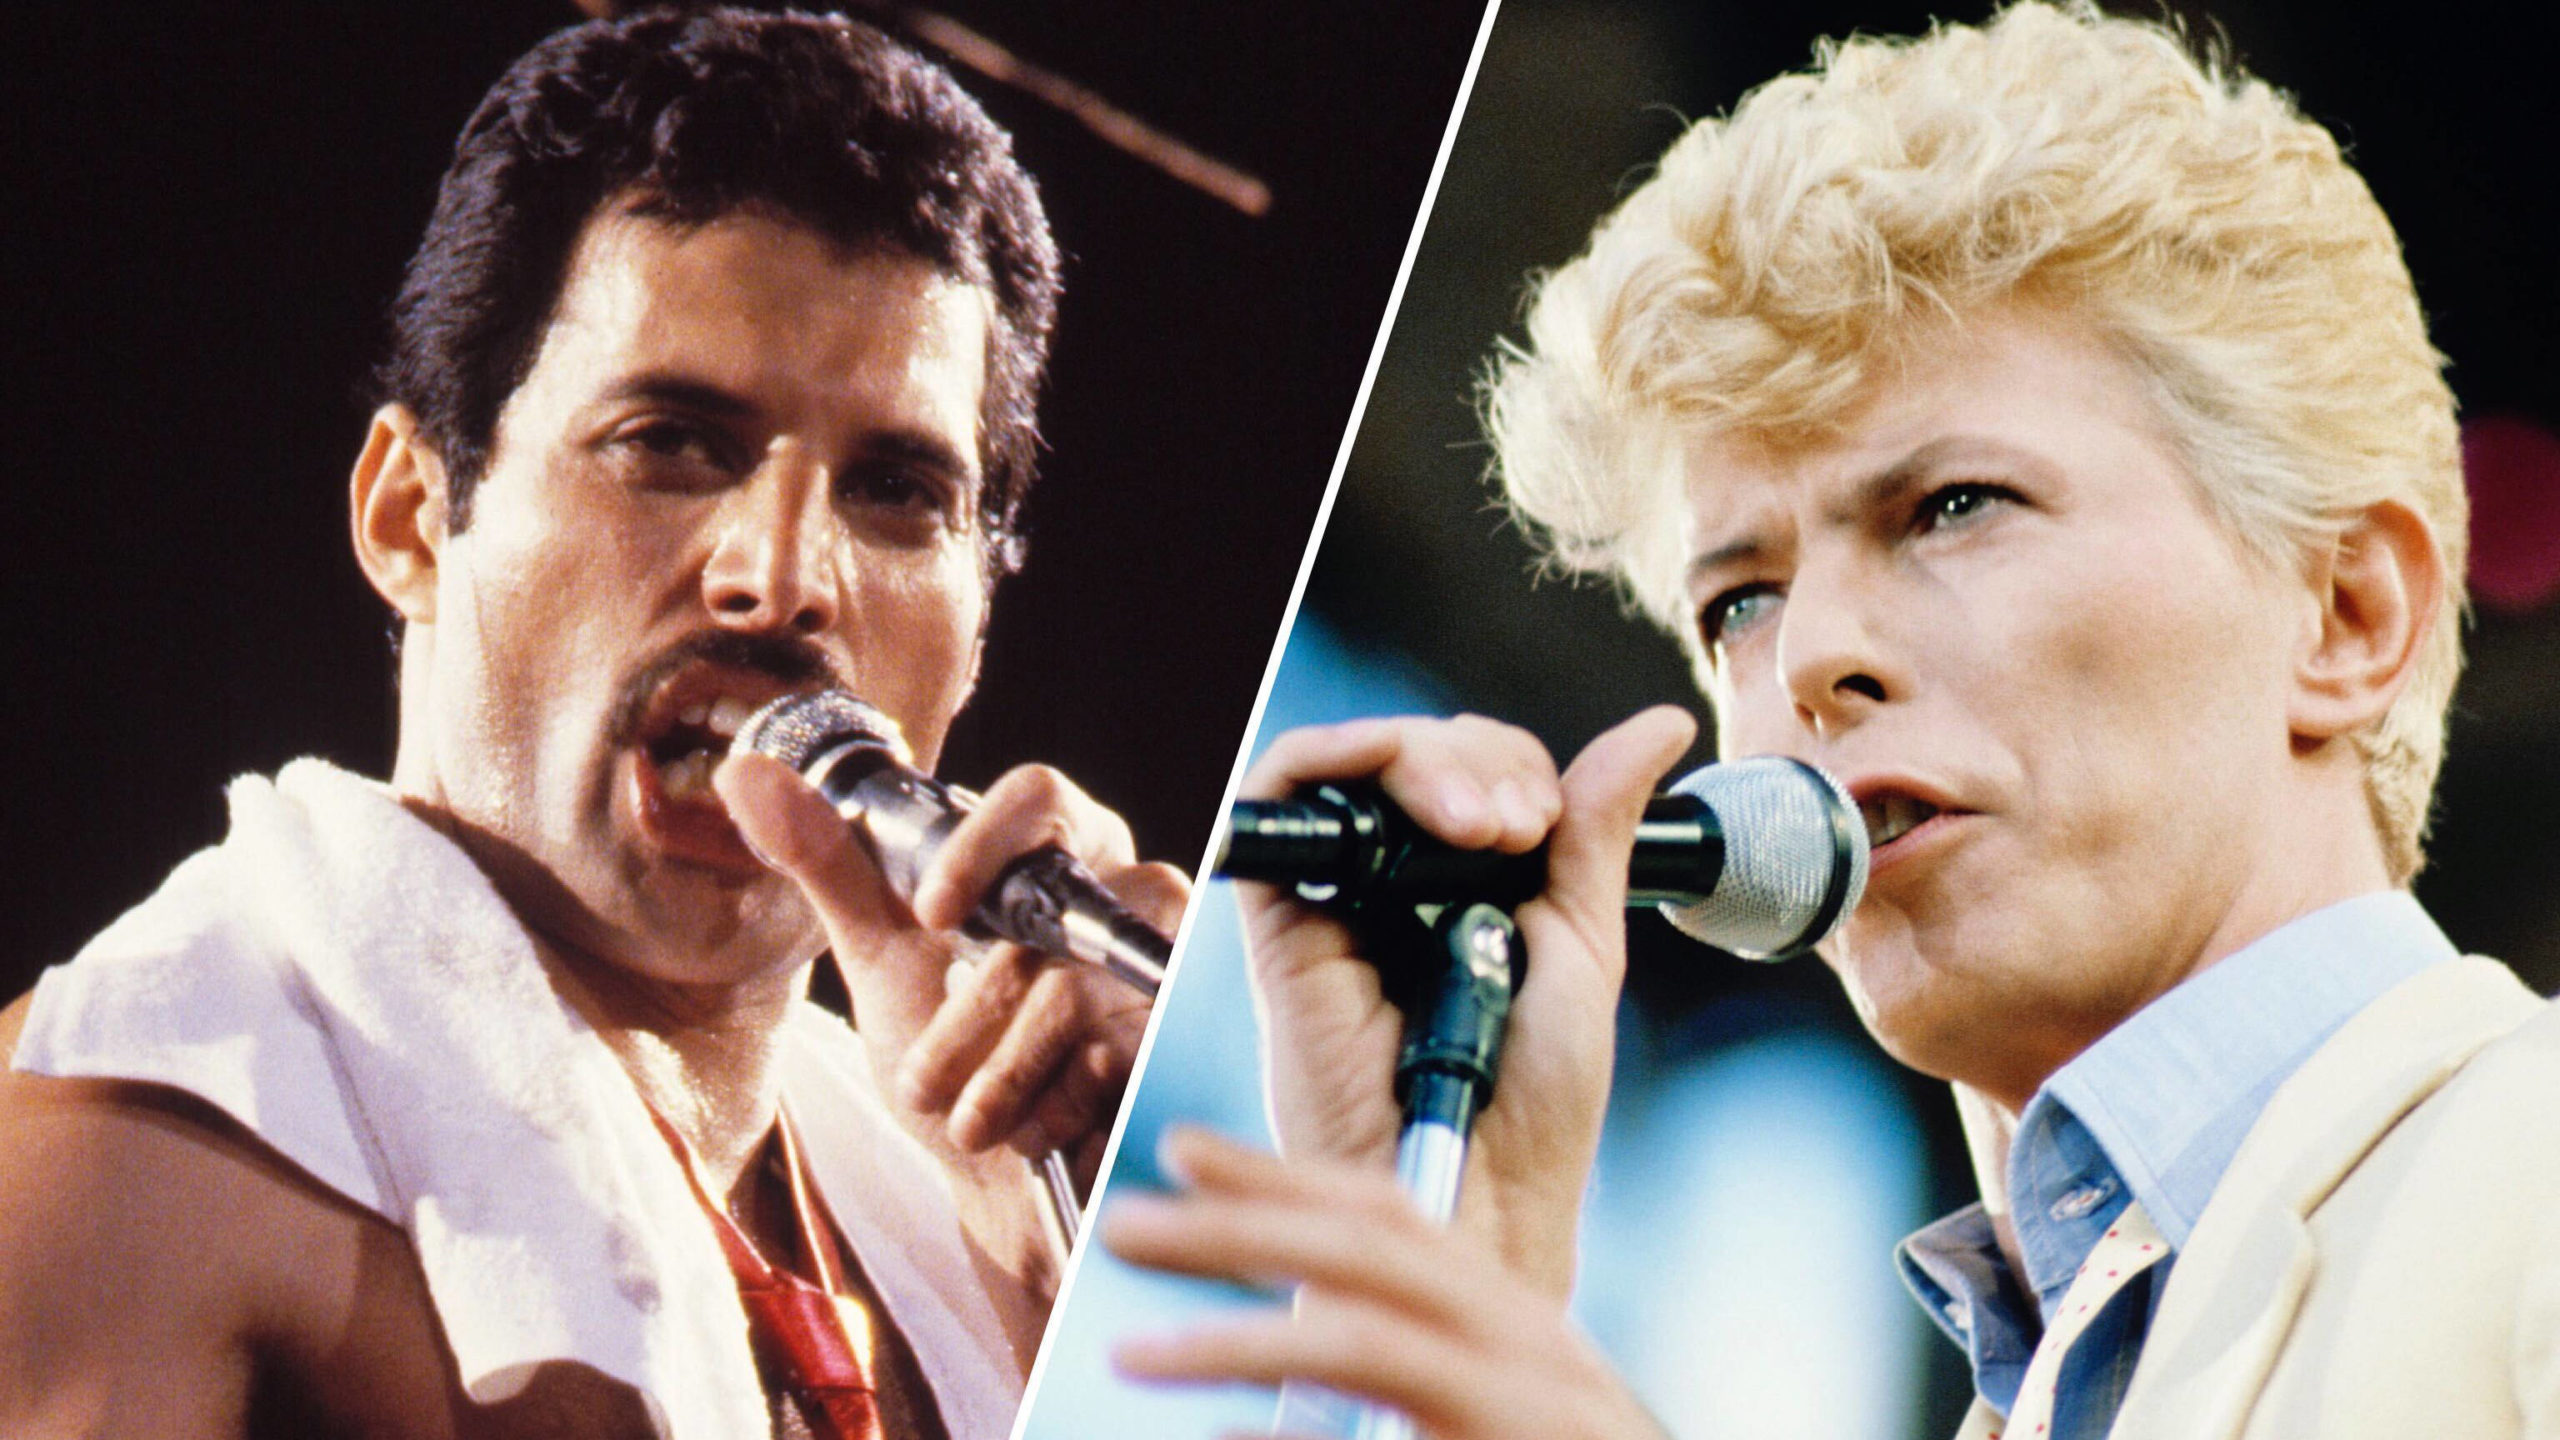 Οι Queen και ο David Bowie έγραψαν το “Under Pressure” μεθυσμένοι στο Montreux